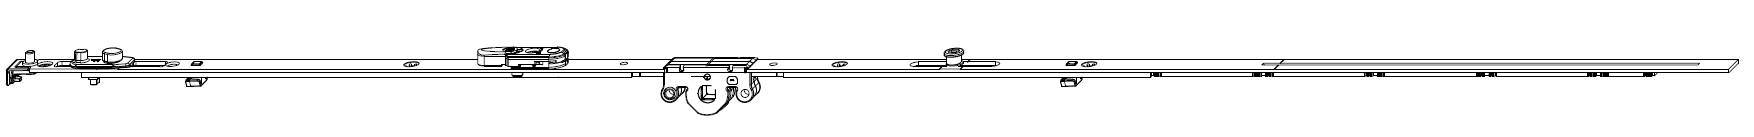 MAICO -  Cremonese MULTI-MATIC anta ribalta antieffrazione altezza maniglia fissa con piedino e dss per ribalta e bilanciere - gr / dim. 1090 - entrata 15 - alt. man. 300 - lbb/hbb  841-1090